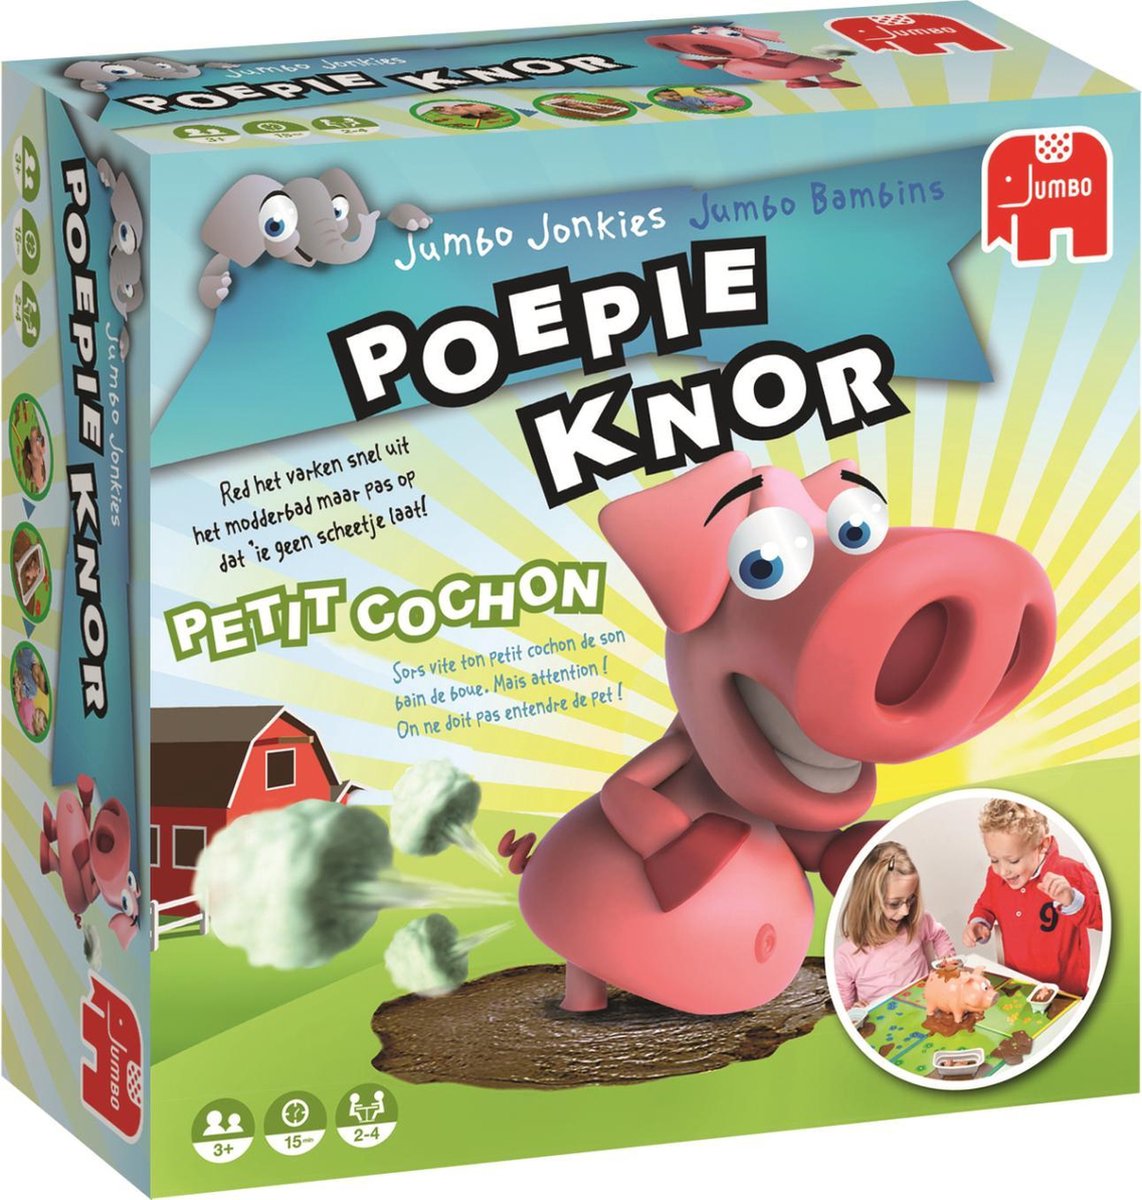 Jumbo Poepie Knor - Kinderspel | Games | bol.com